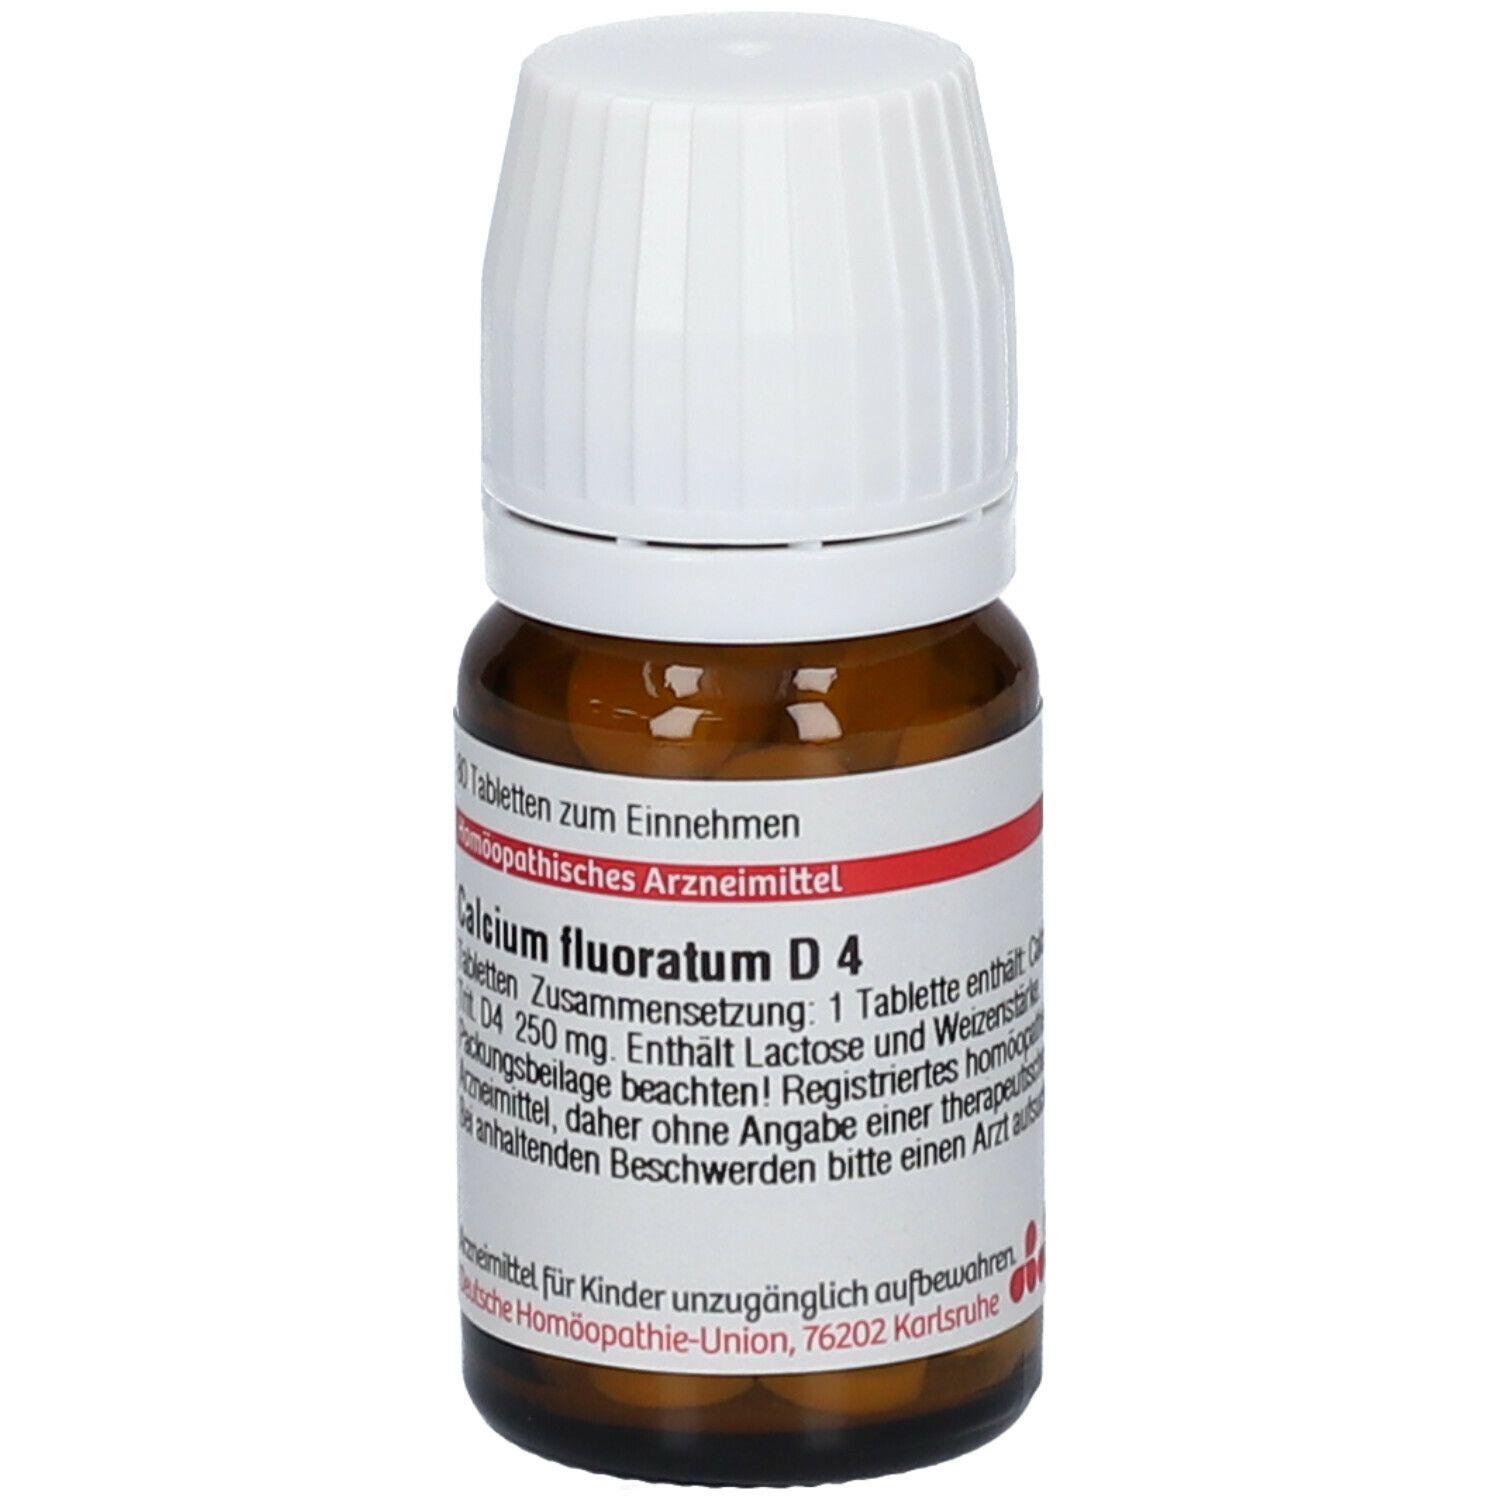 DHU Calcium Fluoratum D4